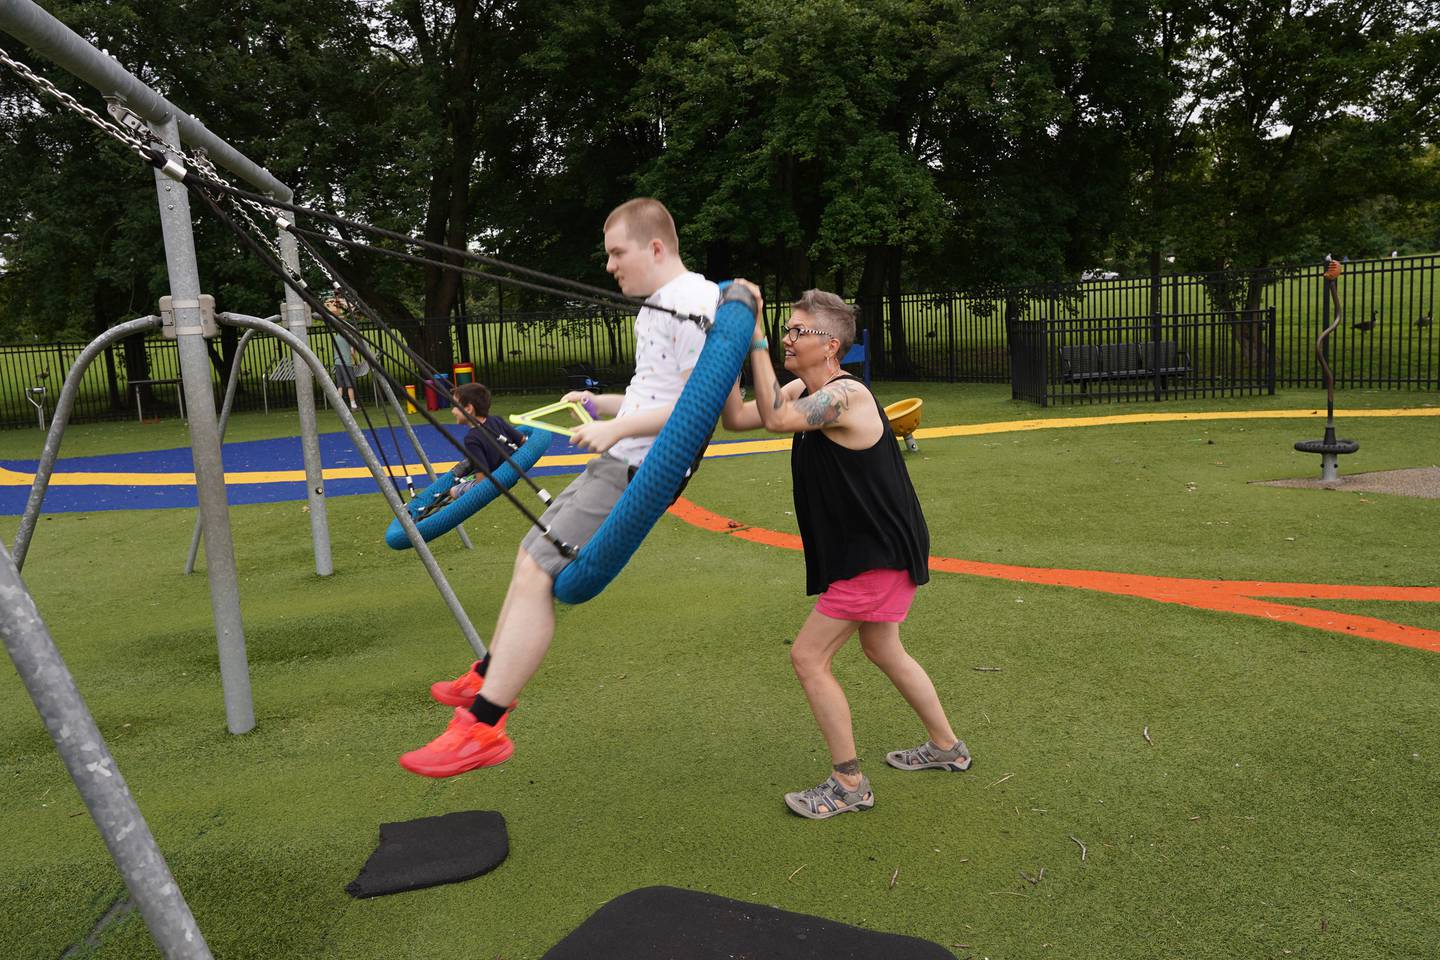 Sunday Stilwell pushes her son, Noah Godfrey, in a swing in Glasgow Regional Park in Delaware.